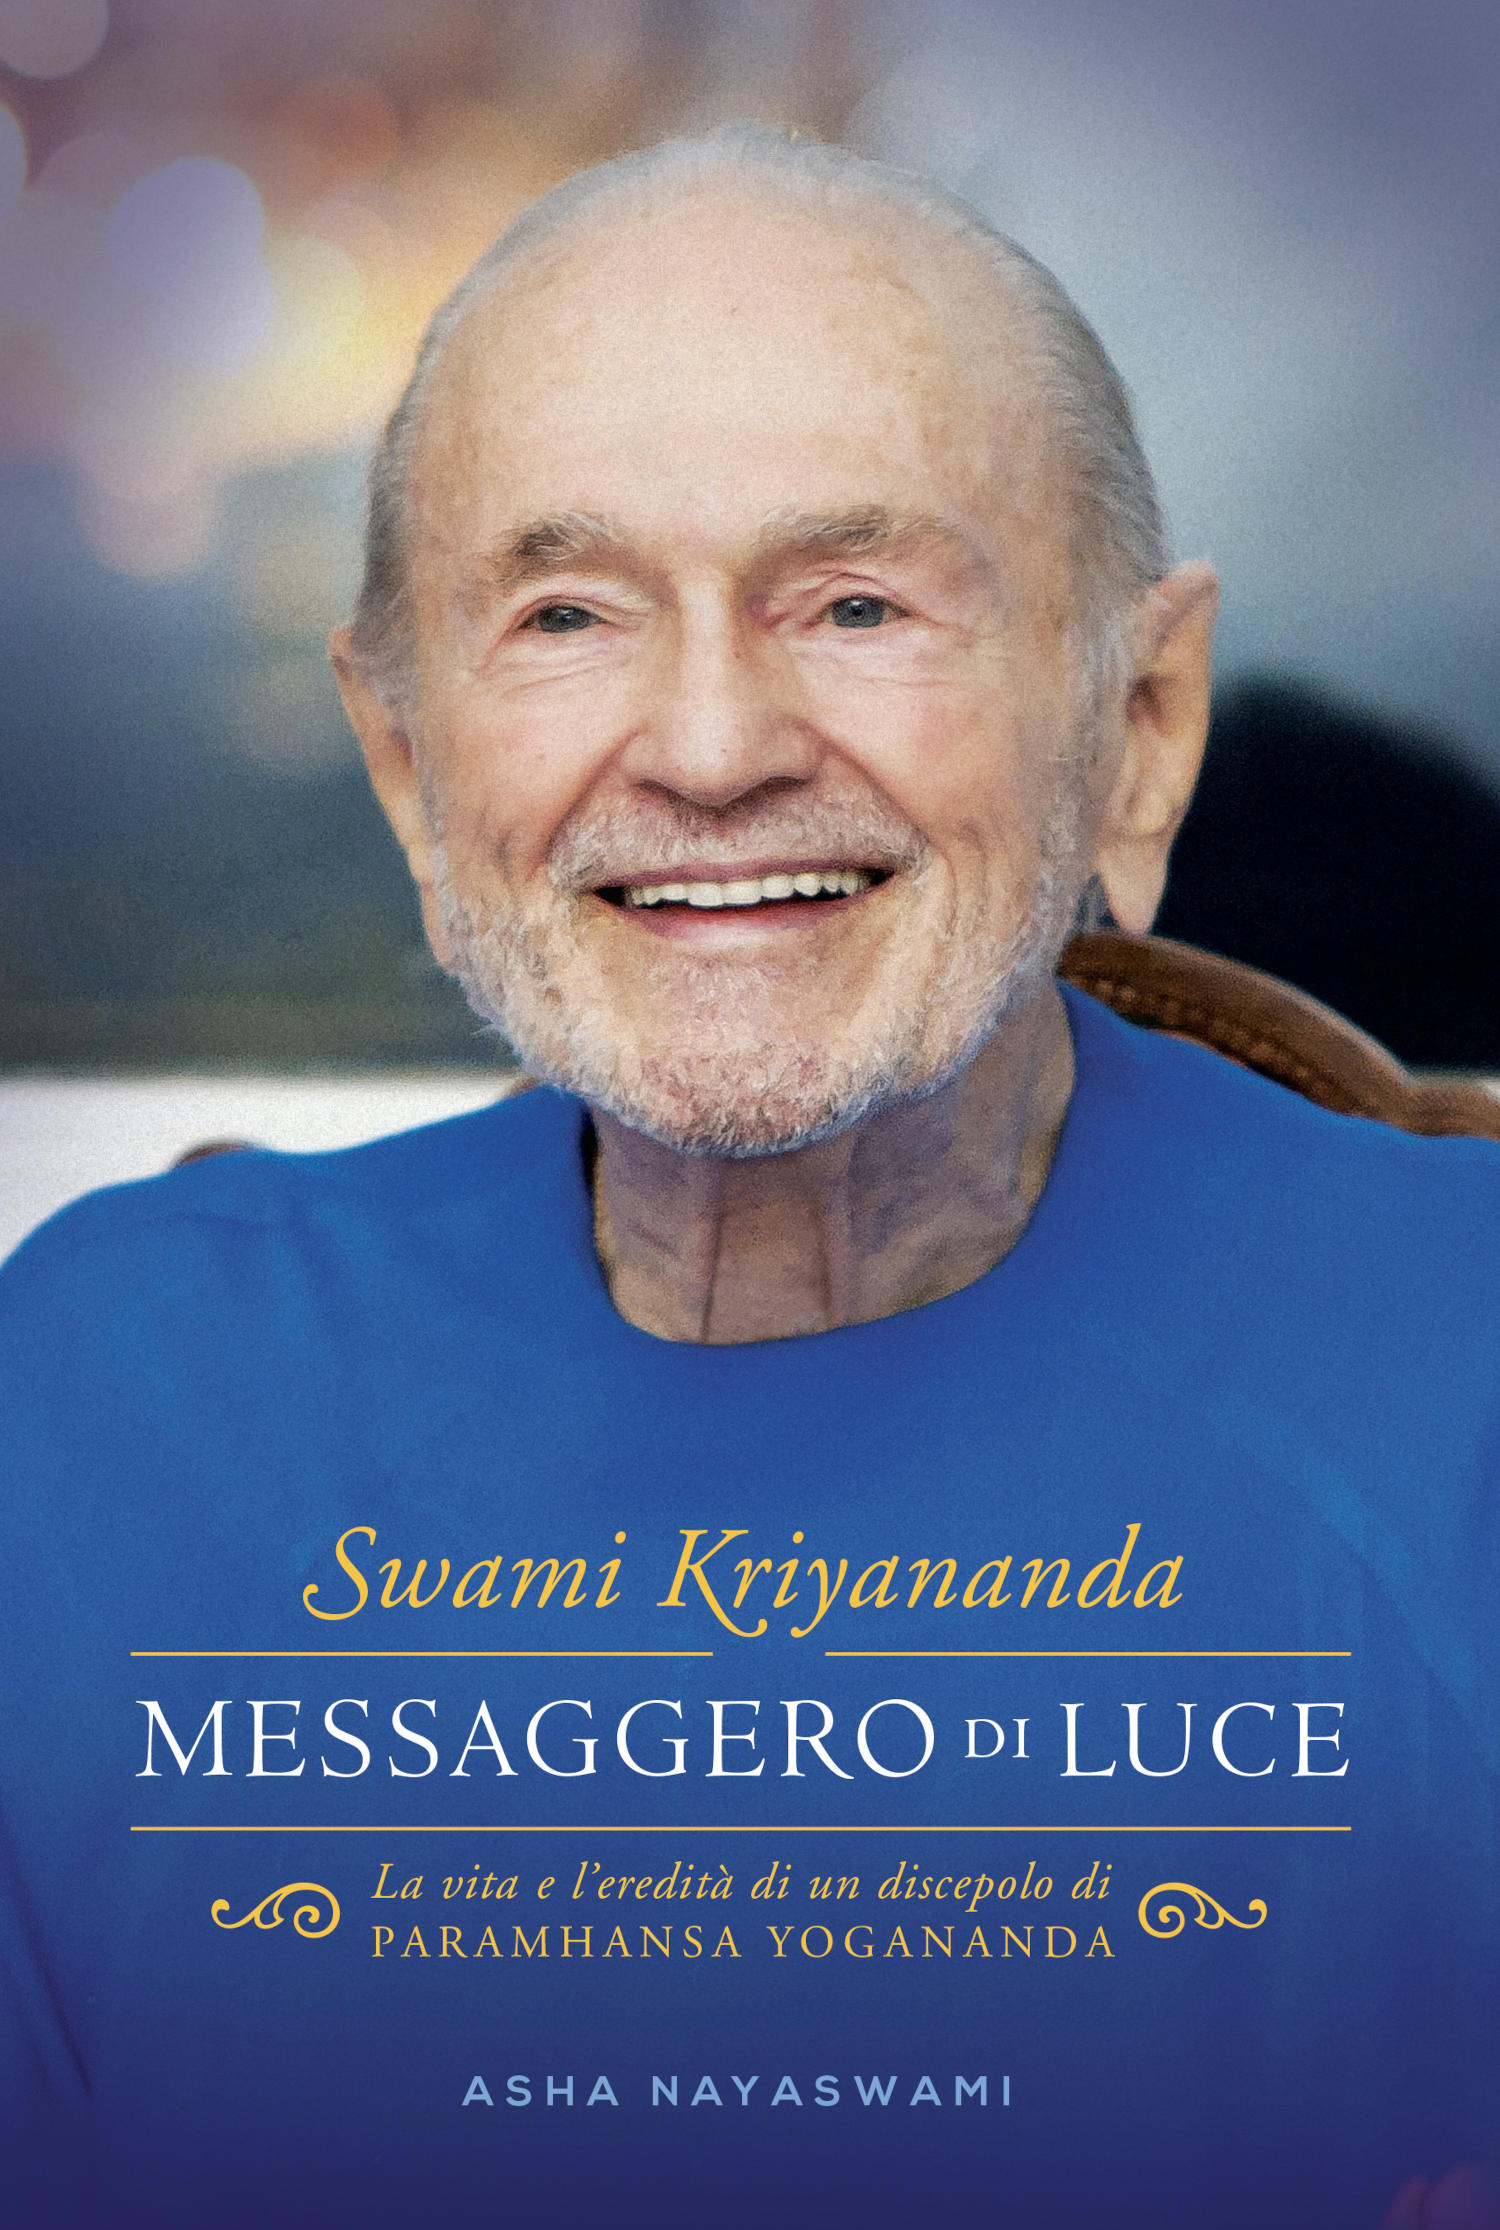 Swami Kriyananda. Messaggero di Luce